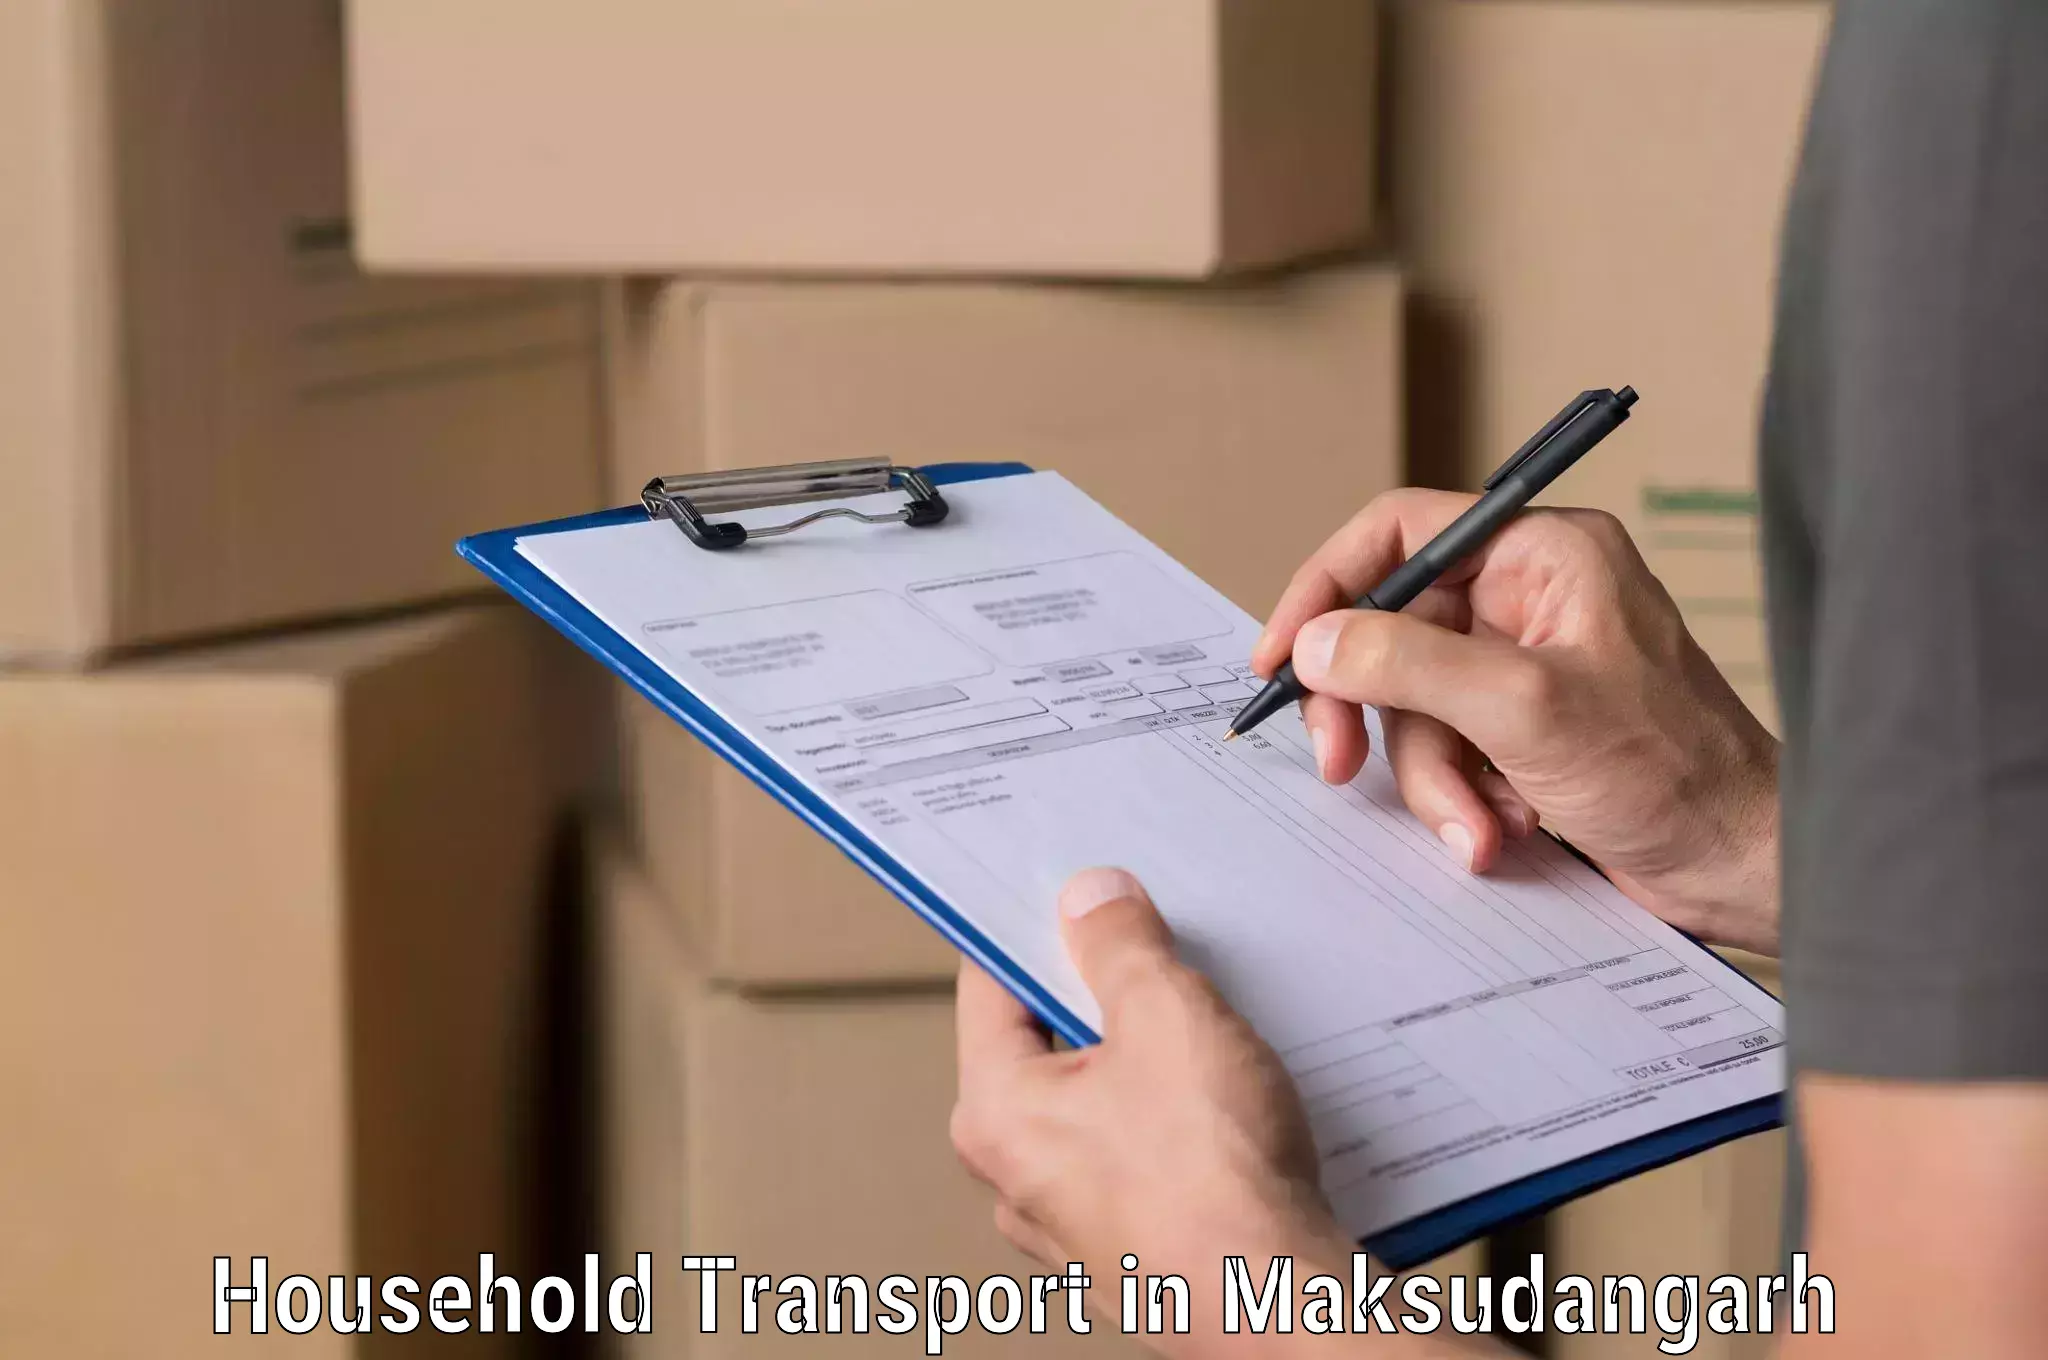 Skilled household transport in Maksudangarh